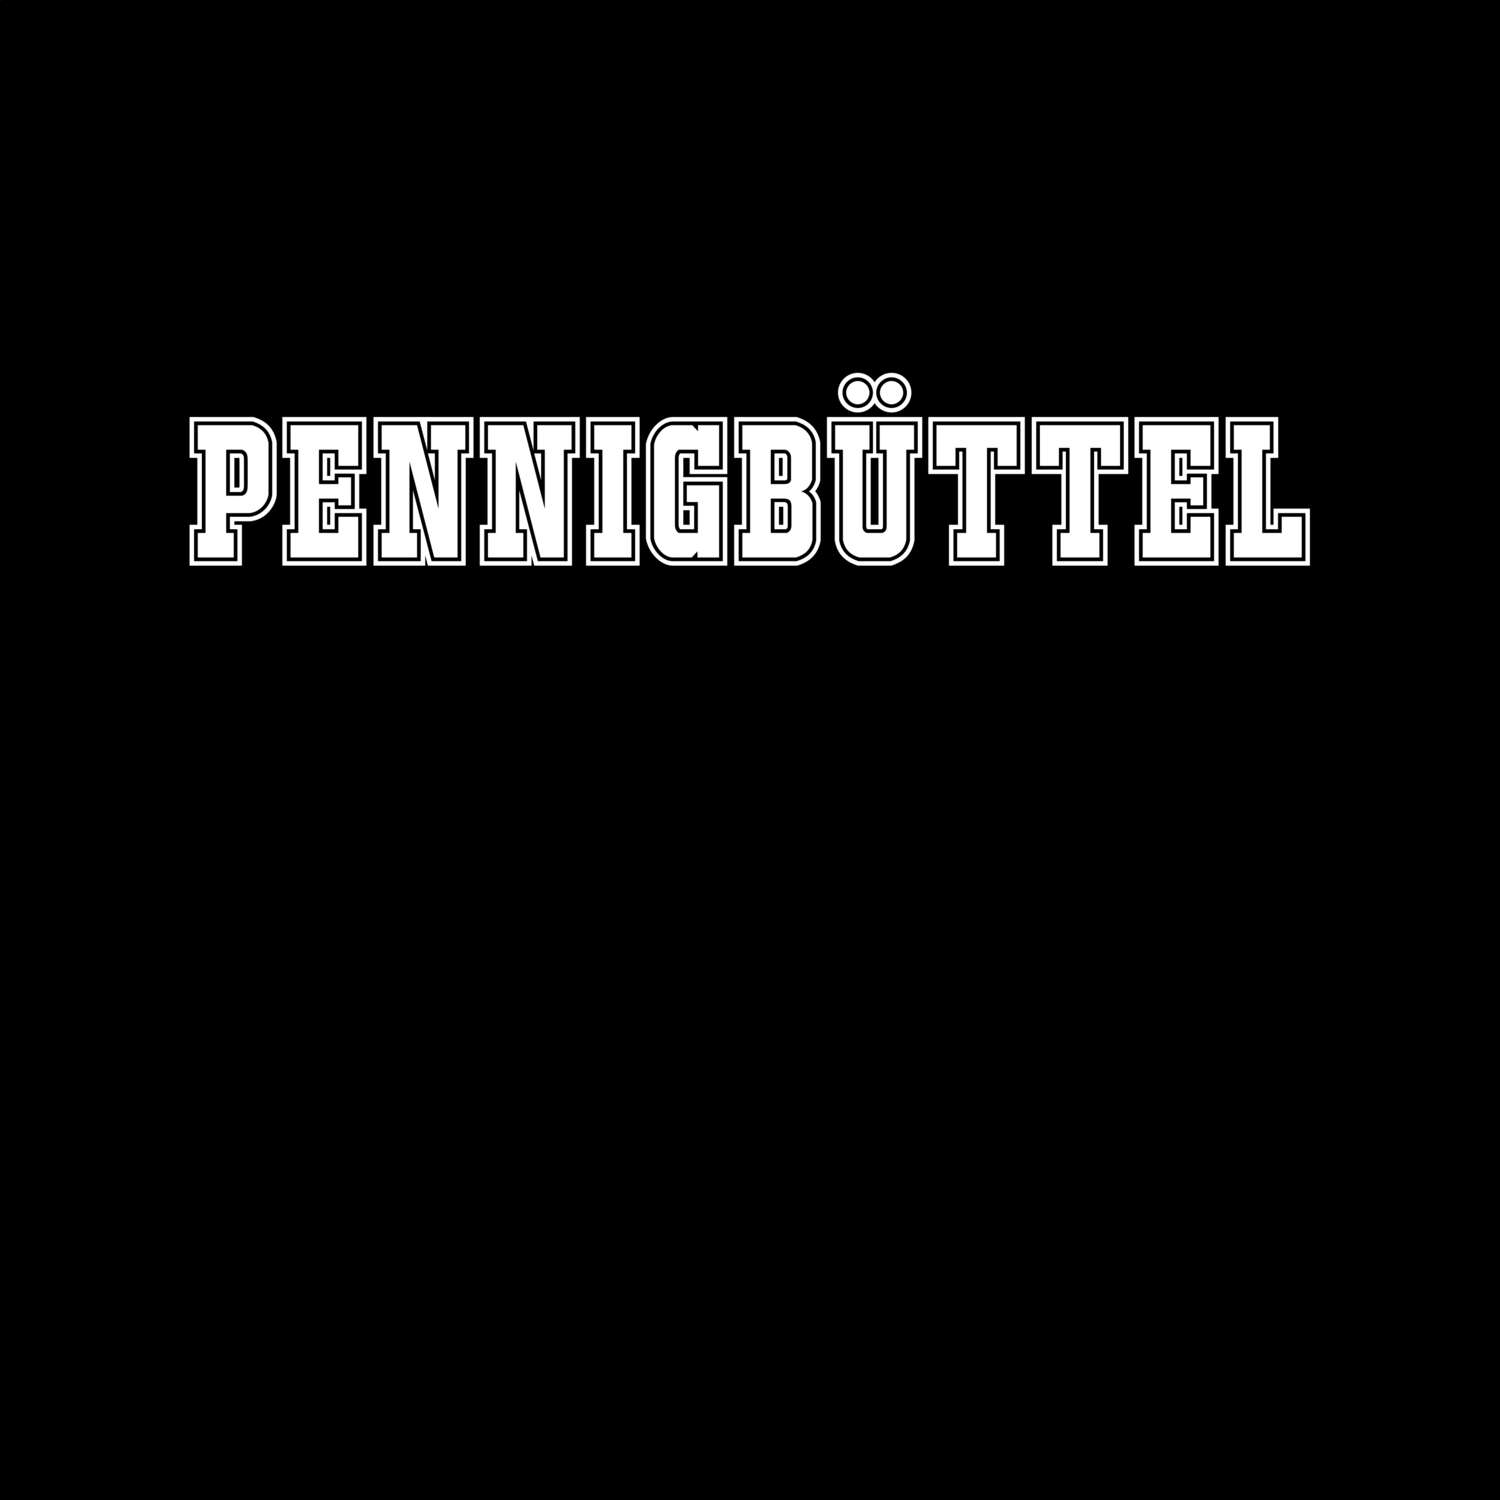 Pennigbüttel T-Shirt »Classic«